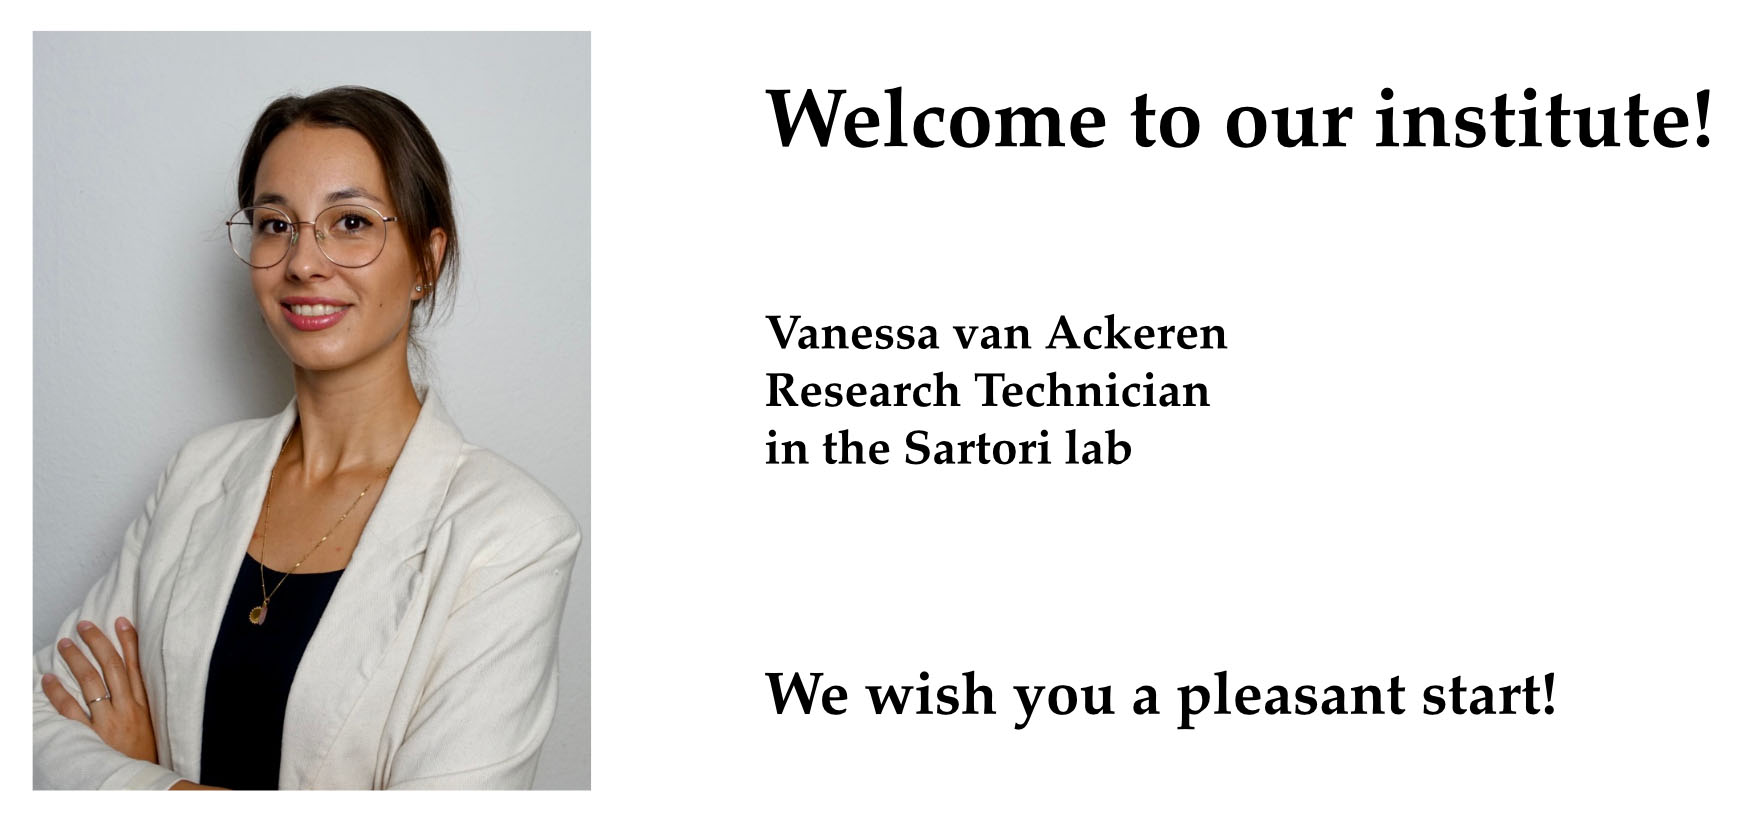 New employee Vanessa van Ackeren